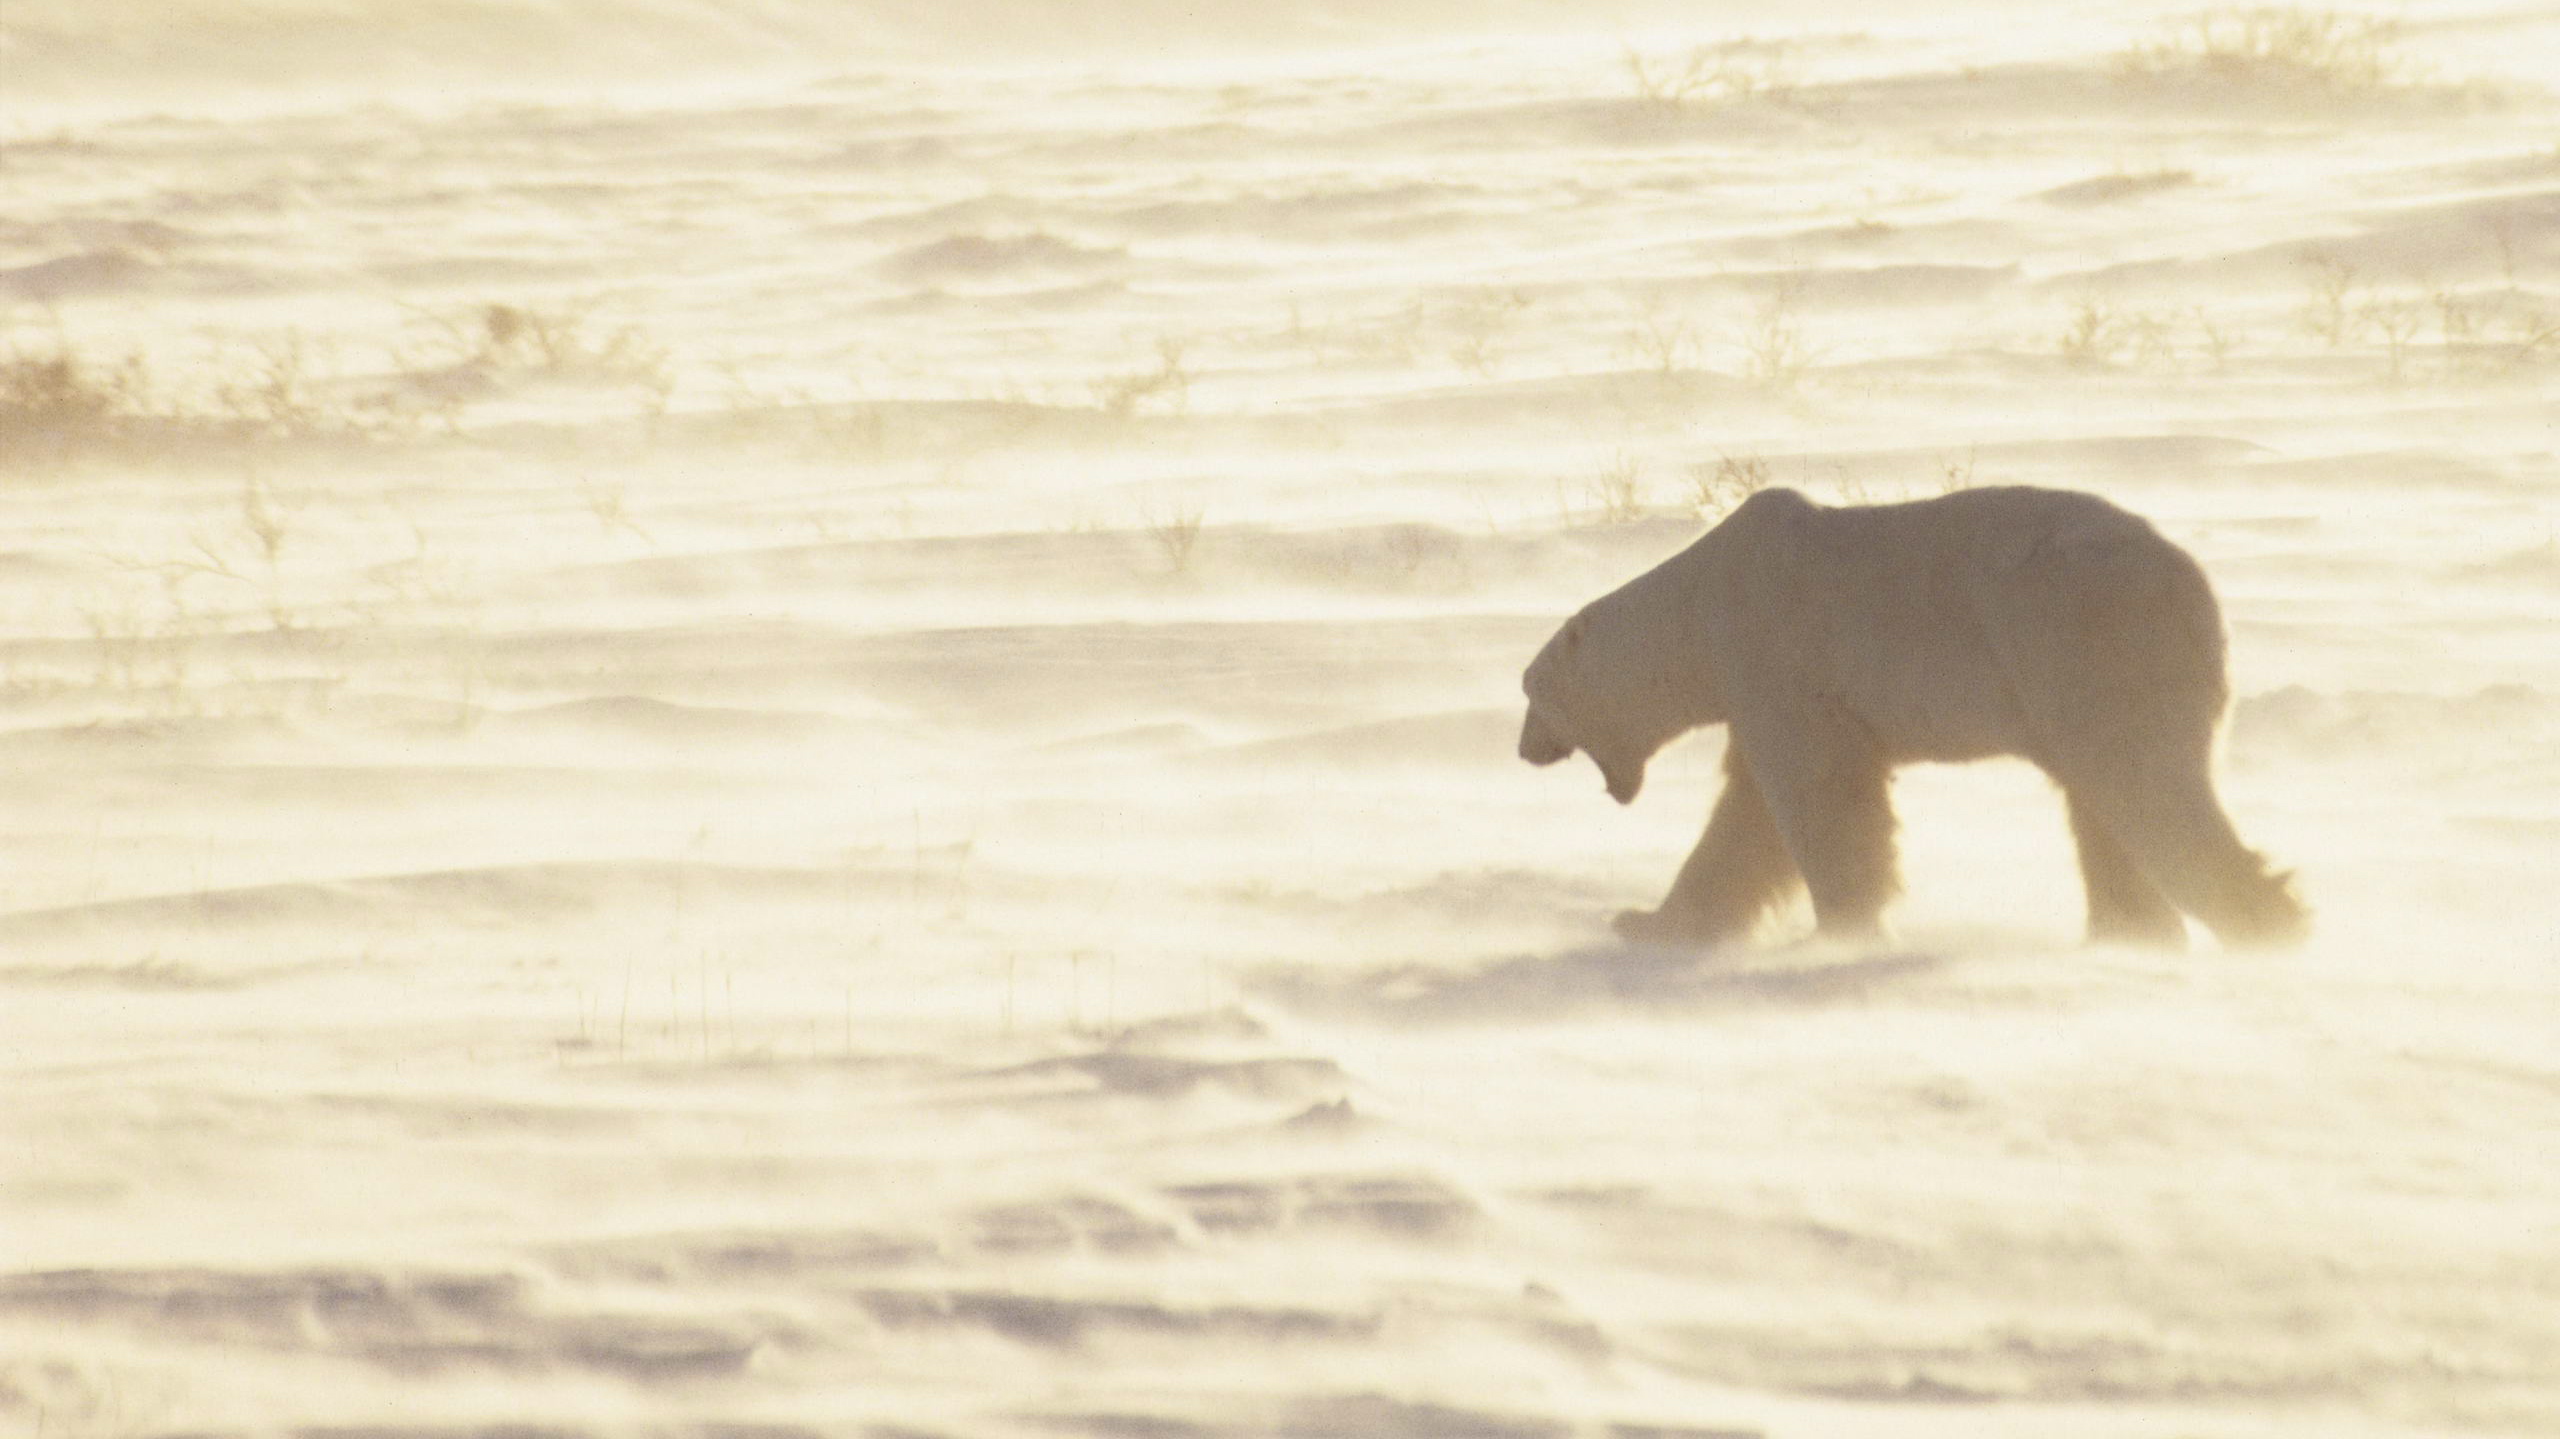 Baixe gratuitamente a imagem Ursos, Urso Polar, Animais na área de trabalho do seu PC